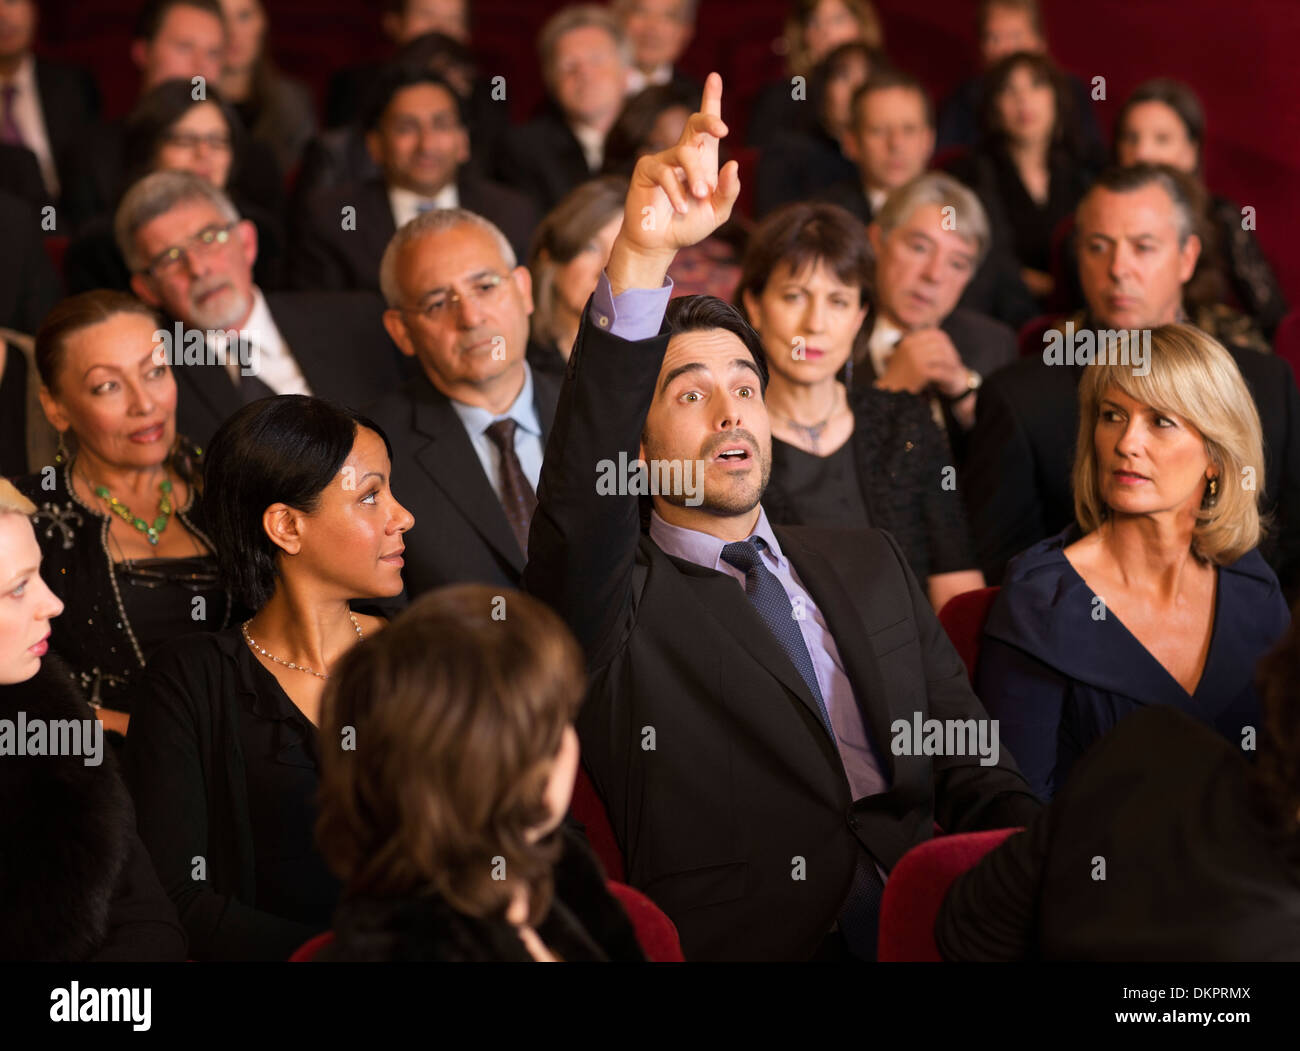 Mann, die Hand im Theater Publikum heben Stockfoto